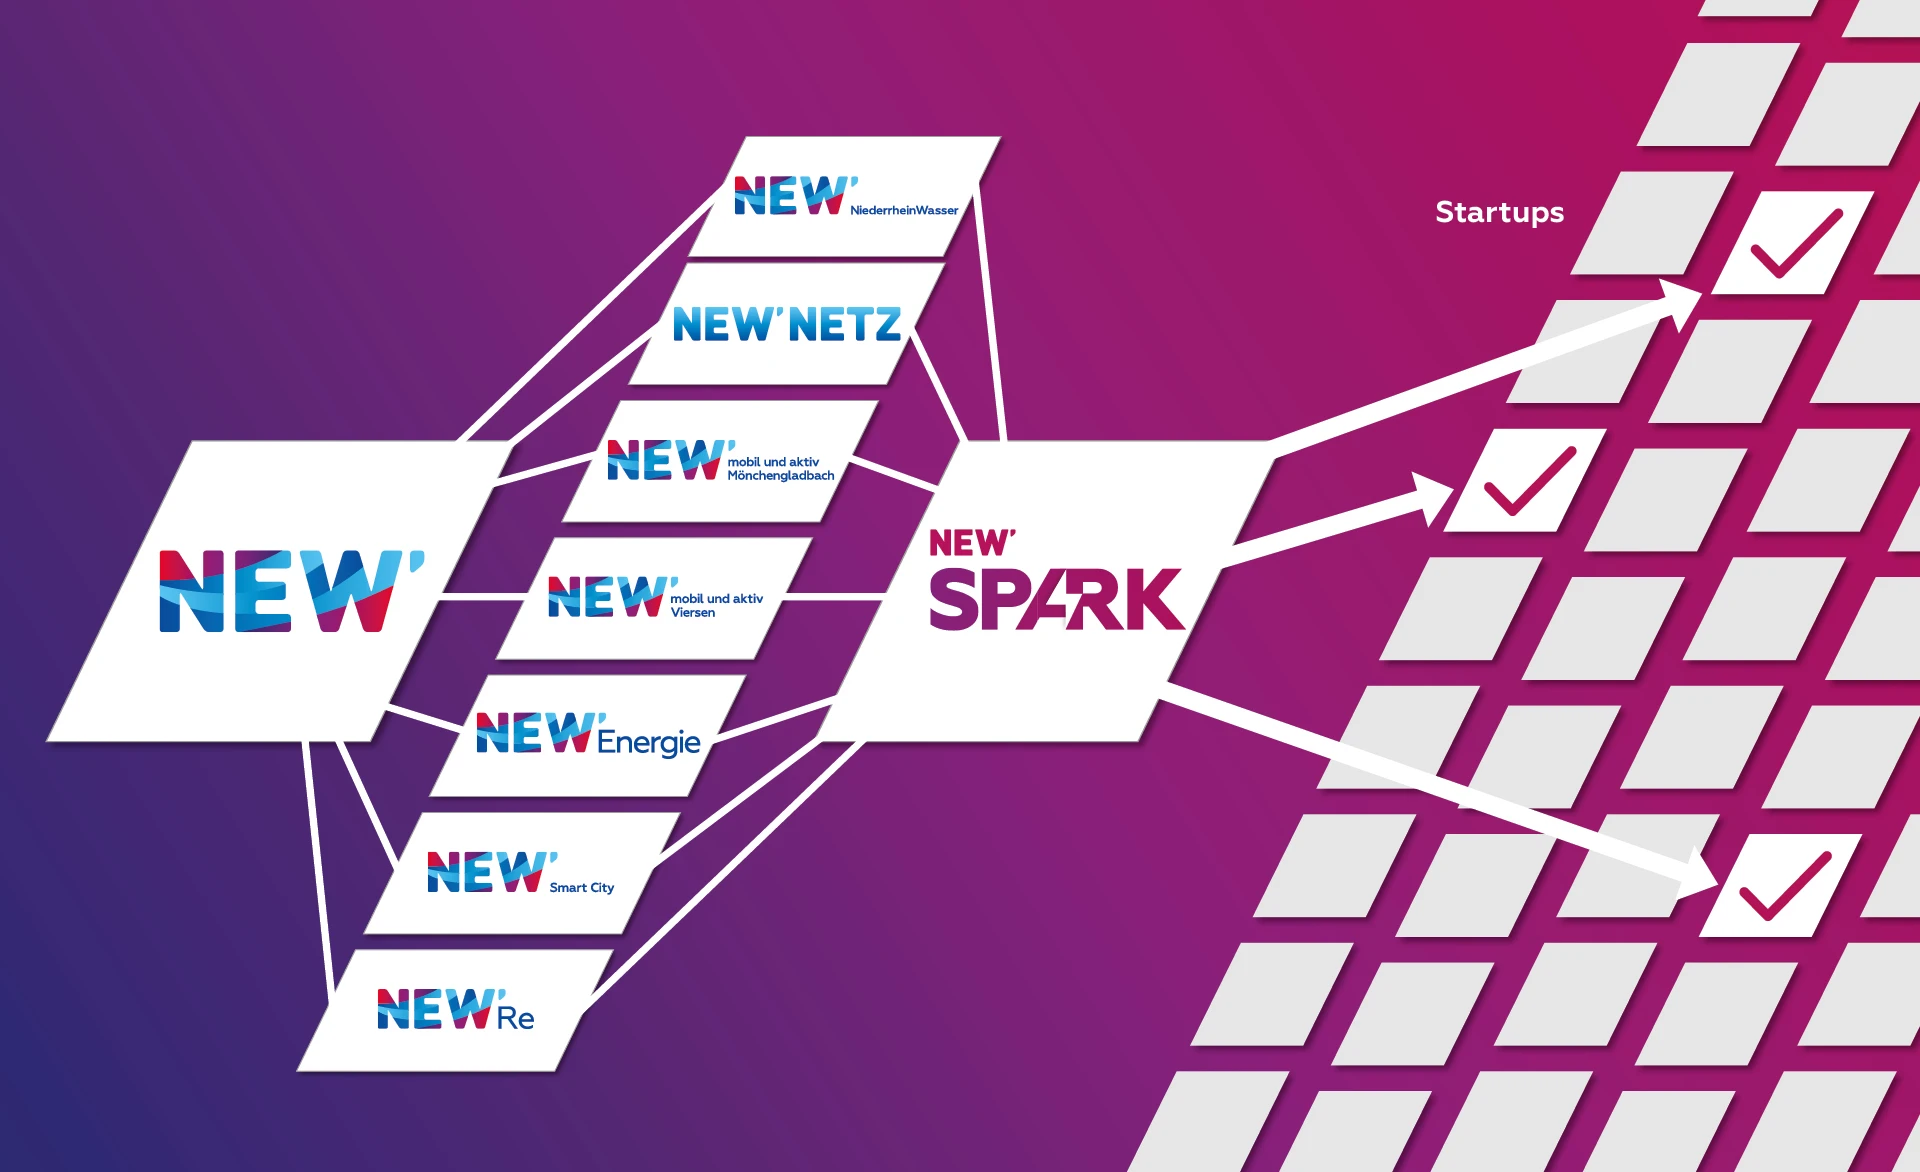 NEW Spark grafisch dargestellt: Eine starke Partnerschaft, die Start-ups mit der NEW-Gruppe verbindet.  